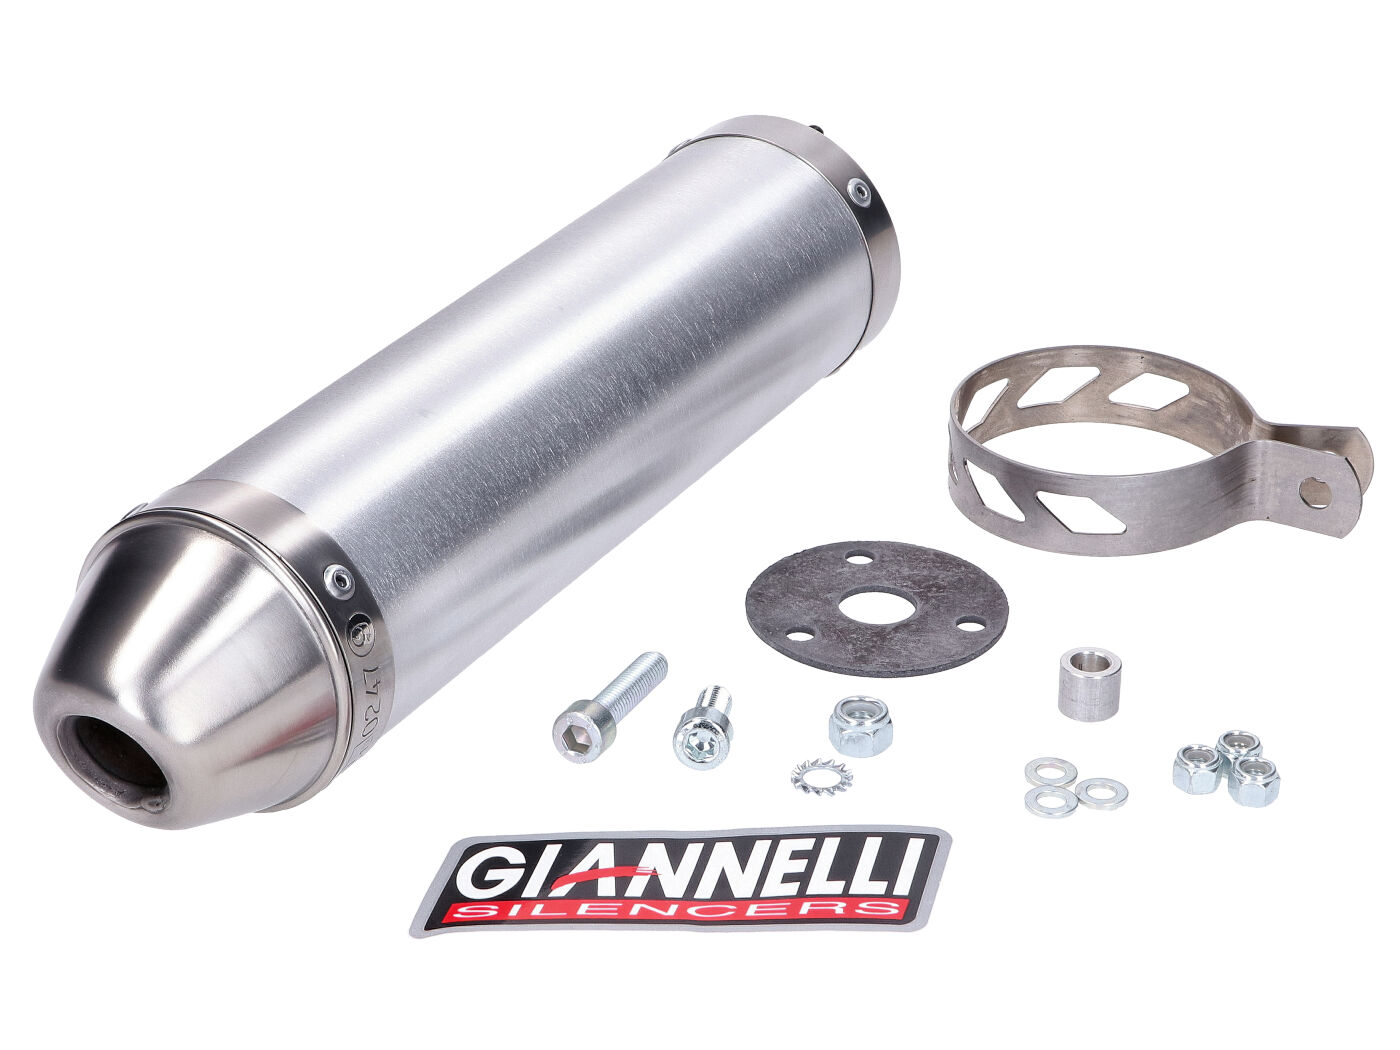 Zadní tlumič Giannelli hliníkový pro Aprilia RS 50 99-06, Tuono 50 03-06